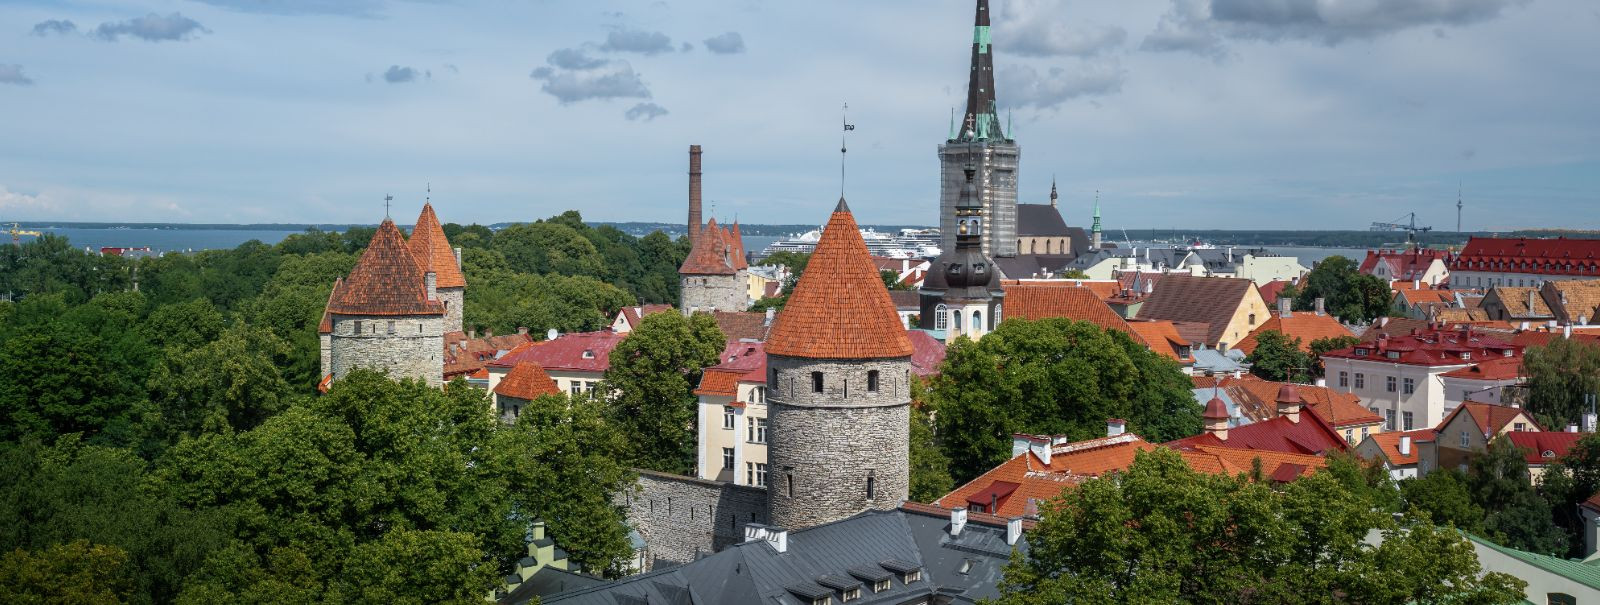 Eesti on tõusnud globaalseks liidriks digitaalse innovatsiooni alal, muutes selle atraktiivseks sihtkohaks ettevõtjatele ja ettevõtetele üle kogu maailma. Oma t